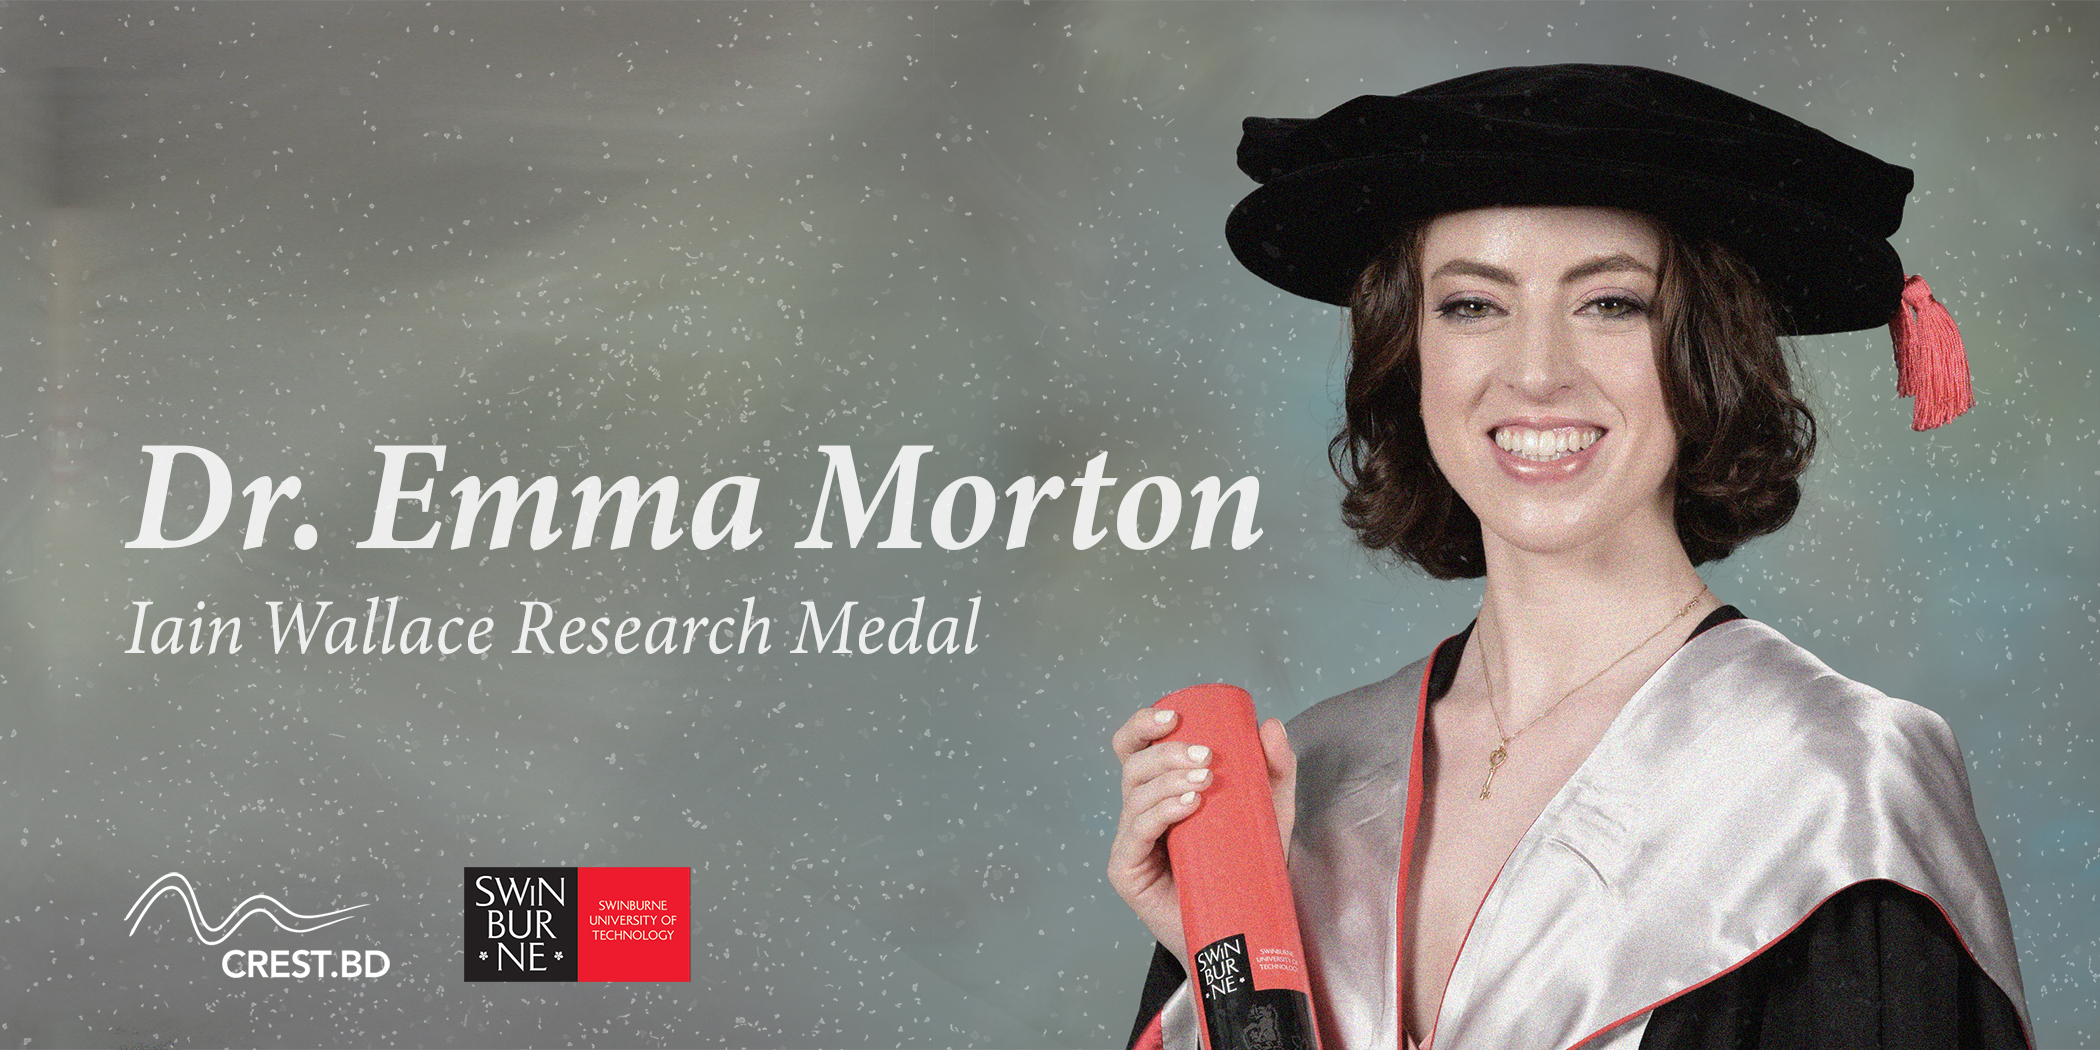 Image of Dr. Emma Morton in graduate attire.